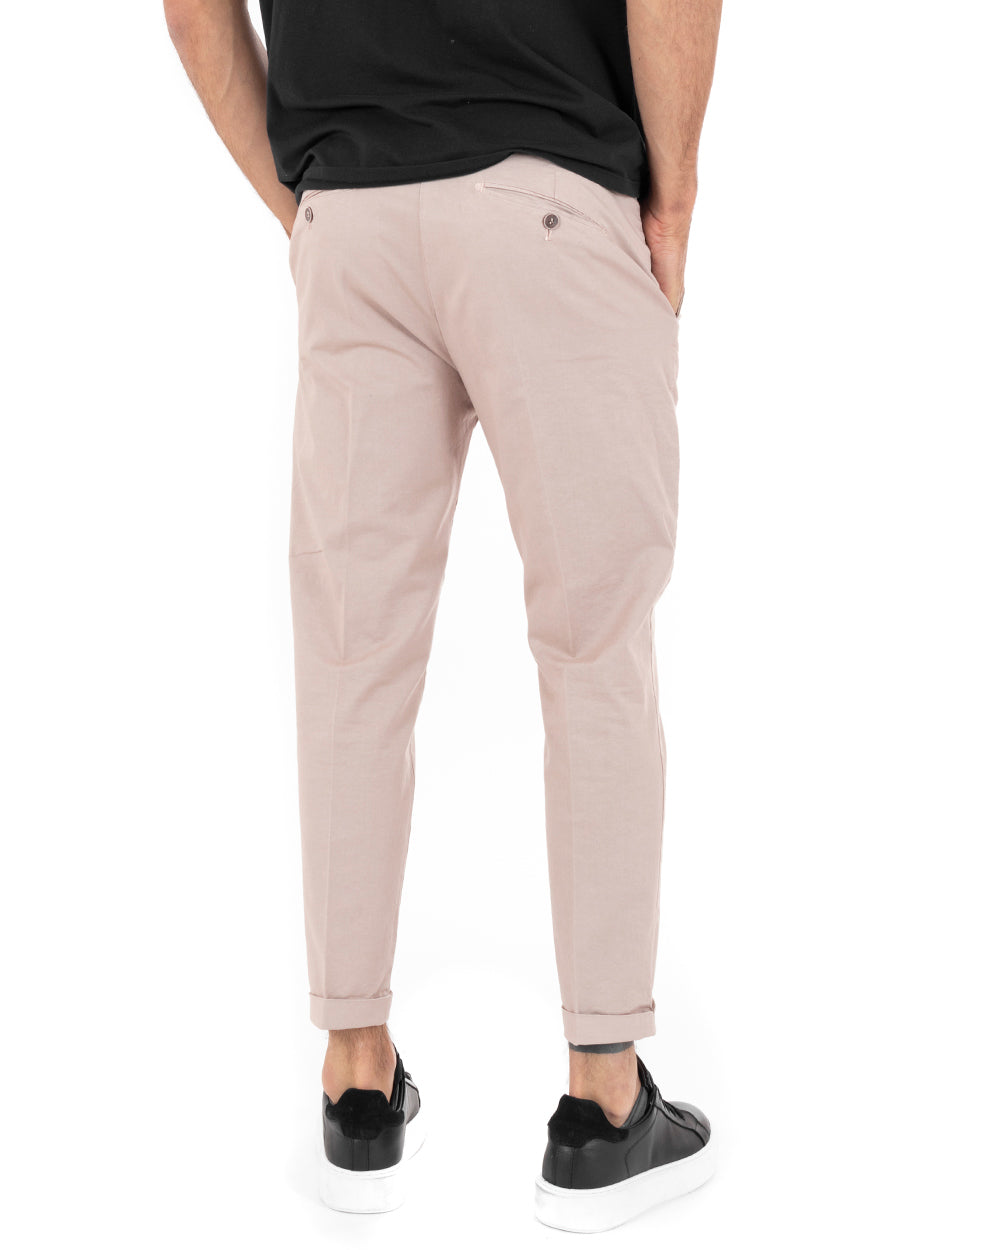 Pantaloni Uomo Cotone Con Tasca America Chinos Capri Basic Sartoriale Slim Fit Casual Rosa GIOSAL-P6102A